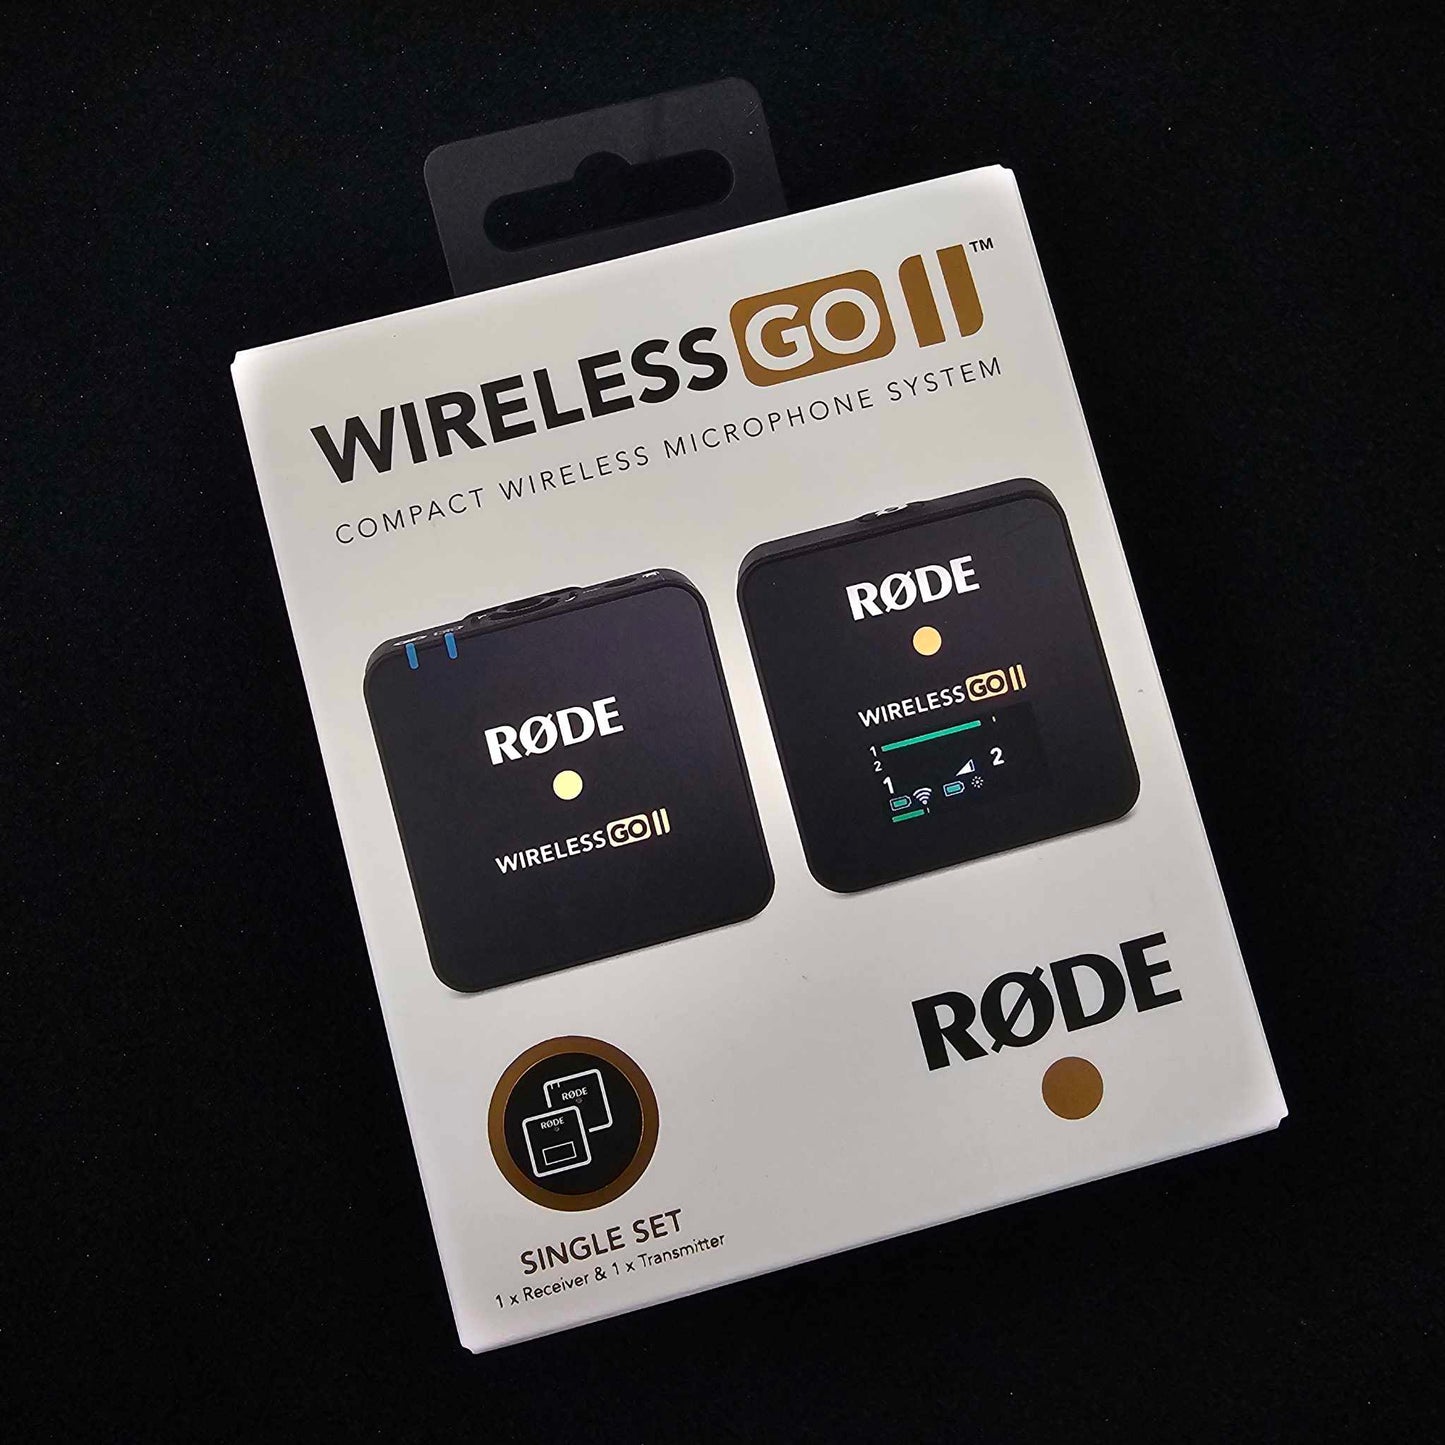 Rode Wireless Go II Single Channel Wireless Microphone System